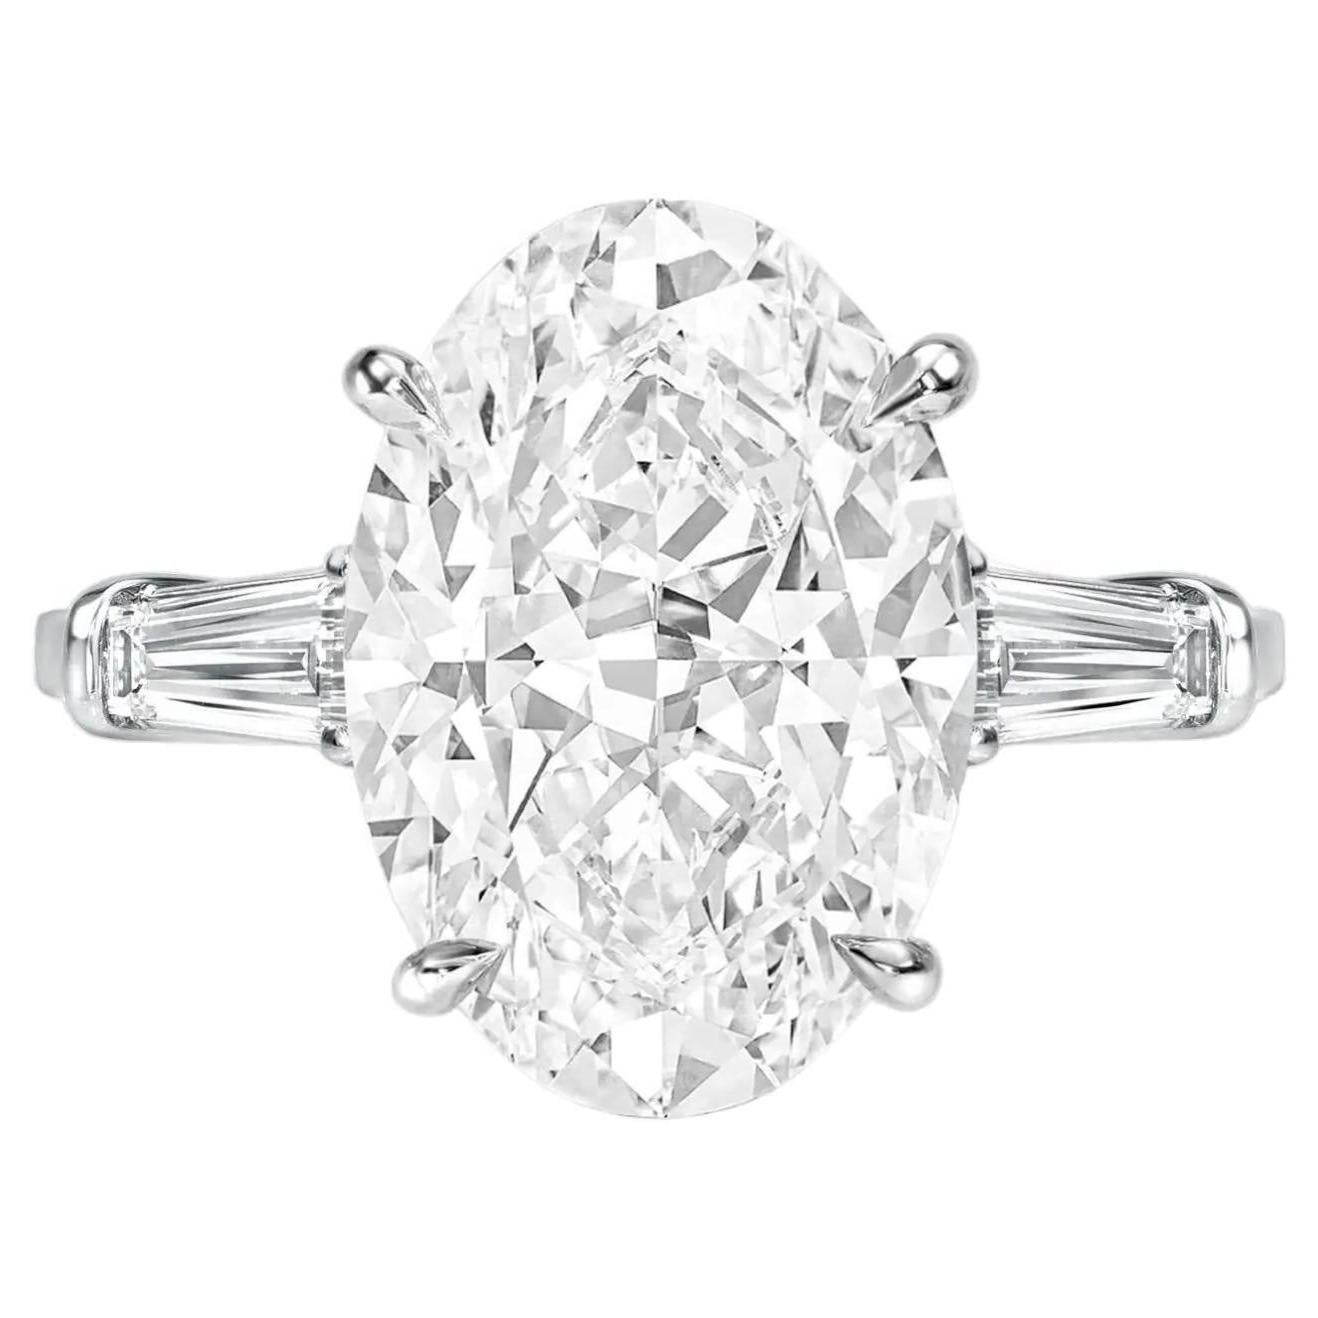 Presentamos el impresionante Anillo de Platino con Diamante Ovalado de 4 Quilates Certificado por el GIA, elegantemente complementado con diamantes baguette cónicos. En el corazón de este exquisito anillo brilla un fascinante diamante de talla oval,